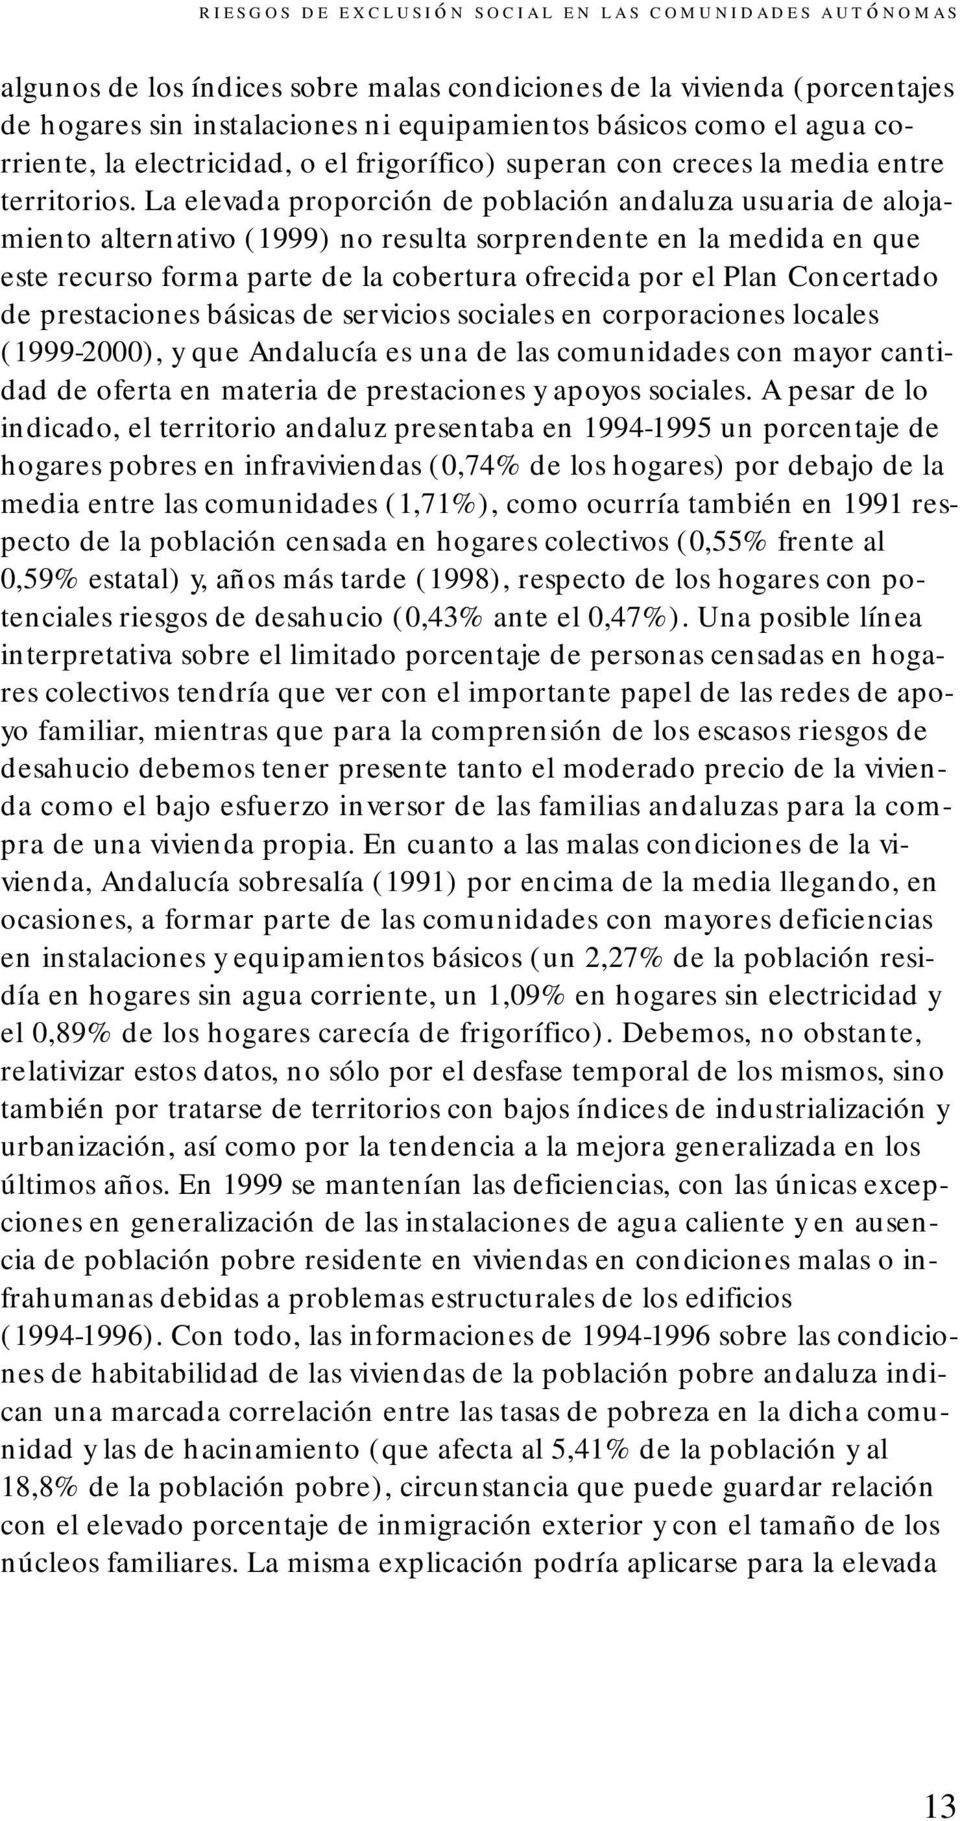 La elevada proporción de población andaluza usuaria de alojamiento alternativo (1999) no resulta sorprendente en la medida en que este recurso forma parte de la cobertura ofrecida por el Plan